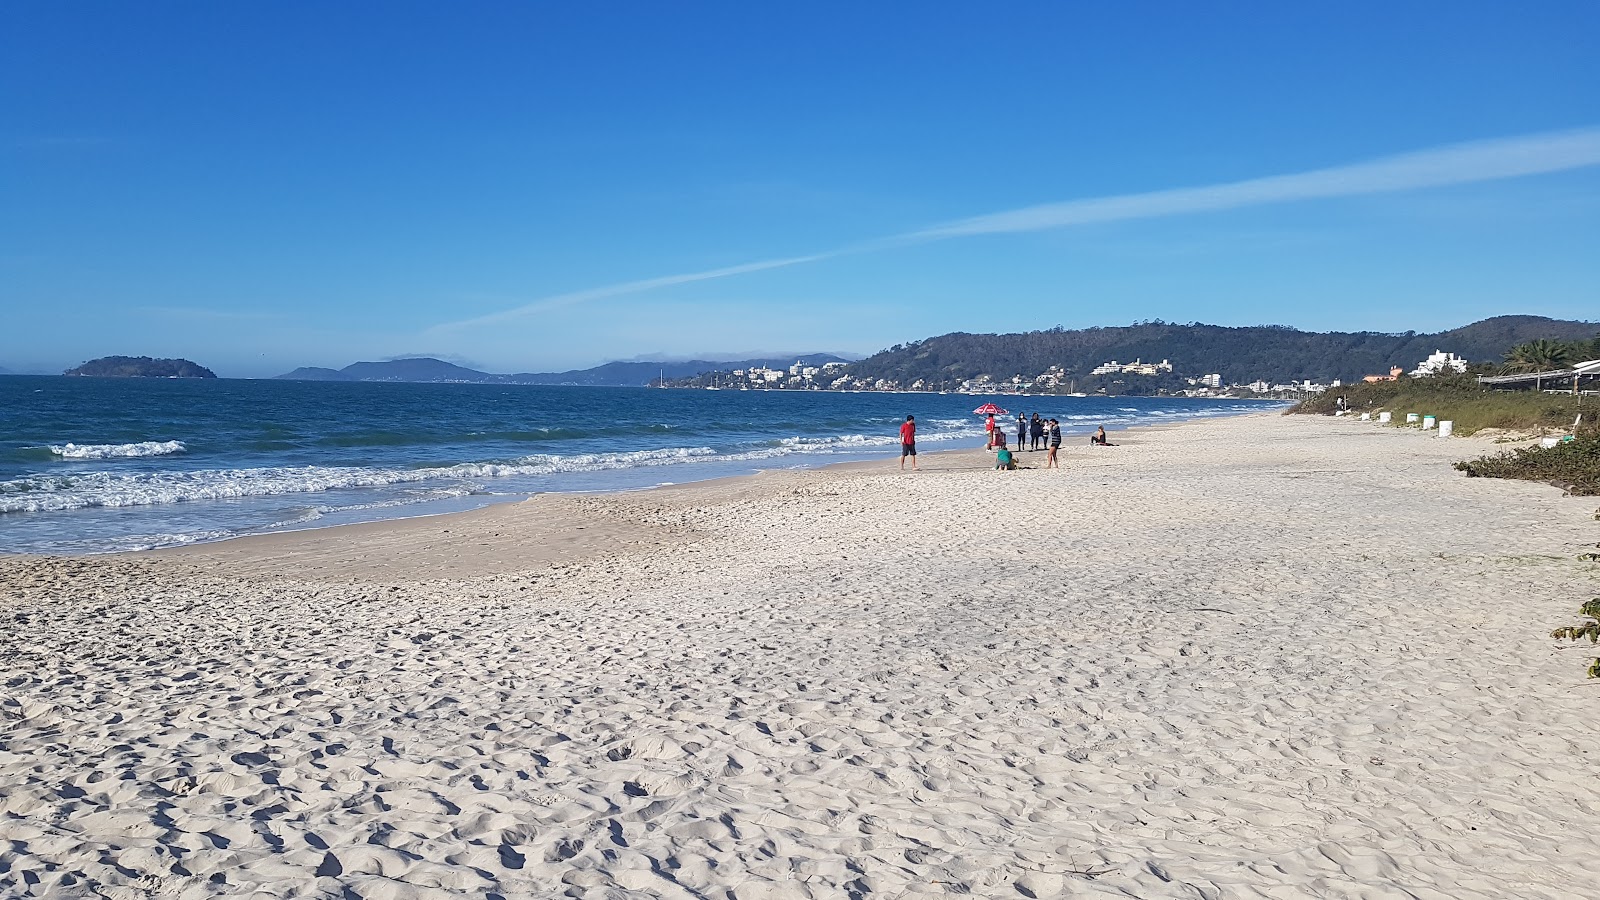 Praia do Canajure'in fotoğrafı geniş plaj ile birlikte